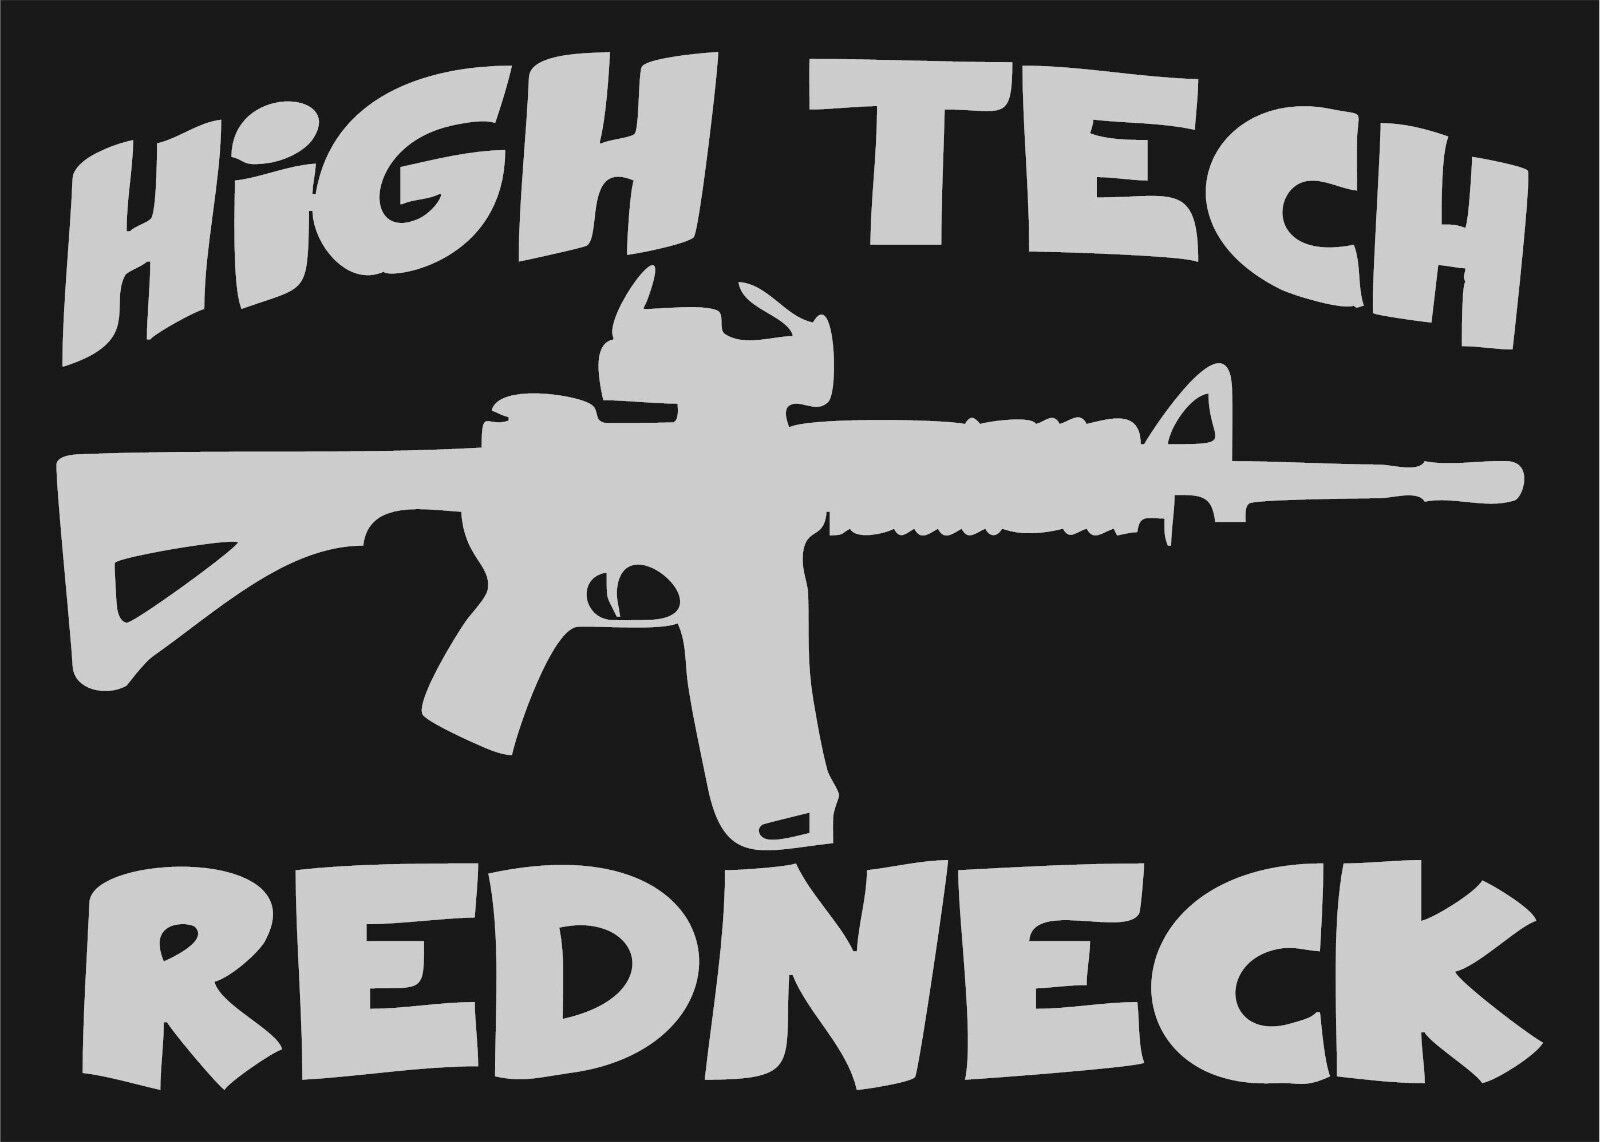 REFLECTIVE HIGH TECH REDNECK AK 47 CAR / TRUCK 8\